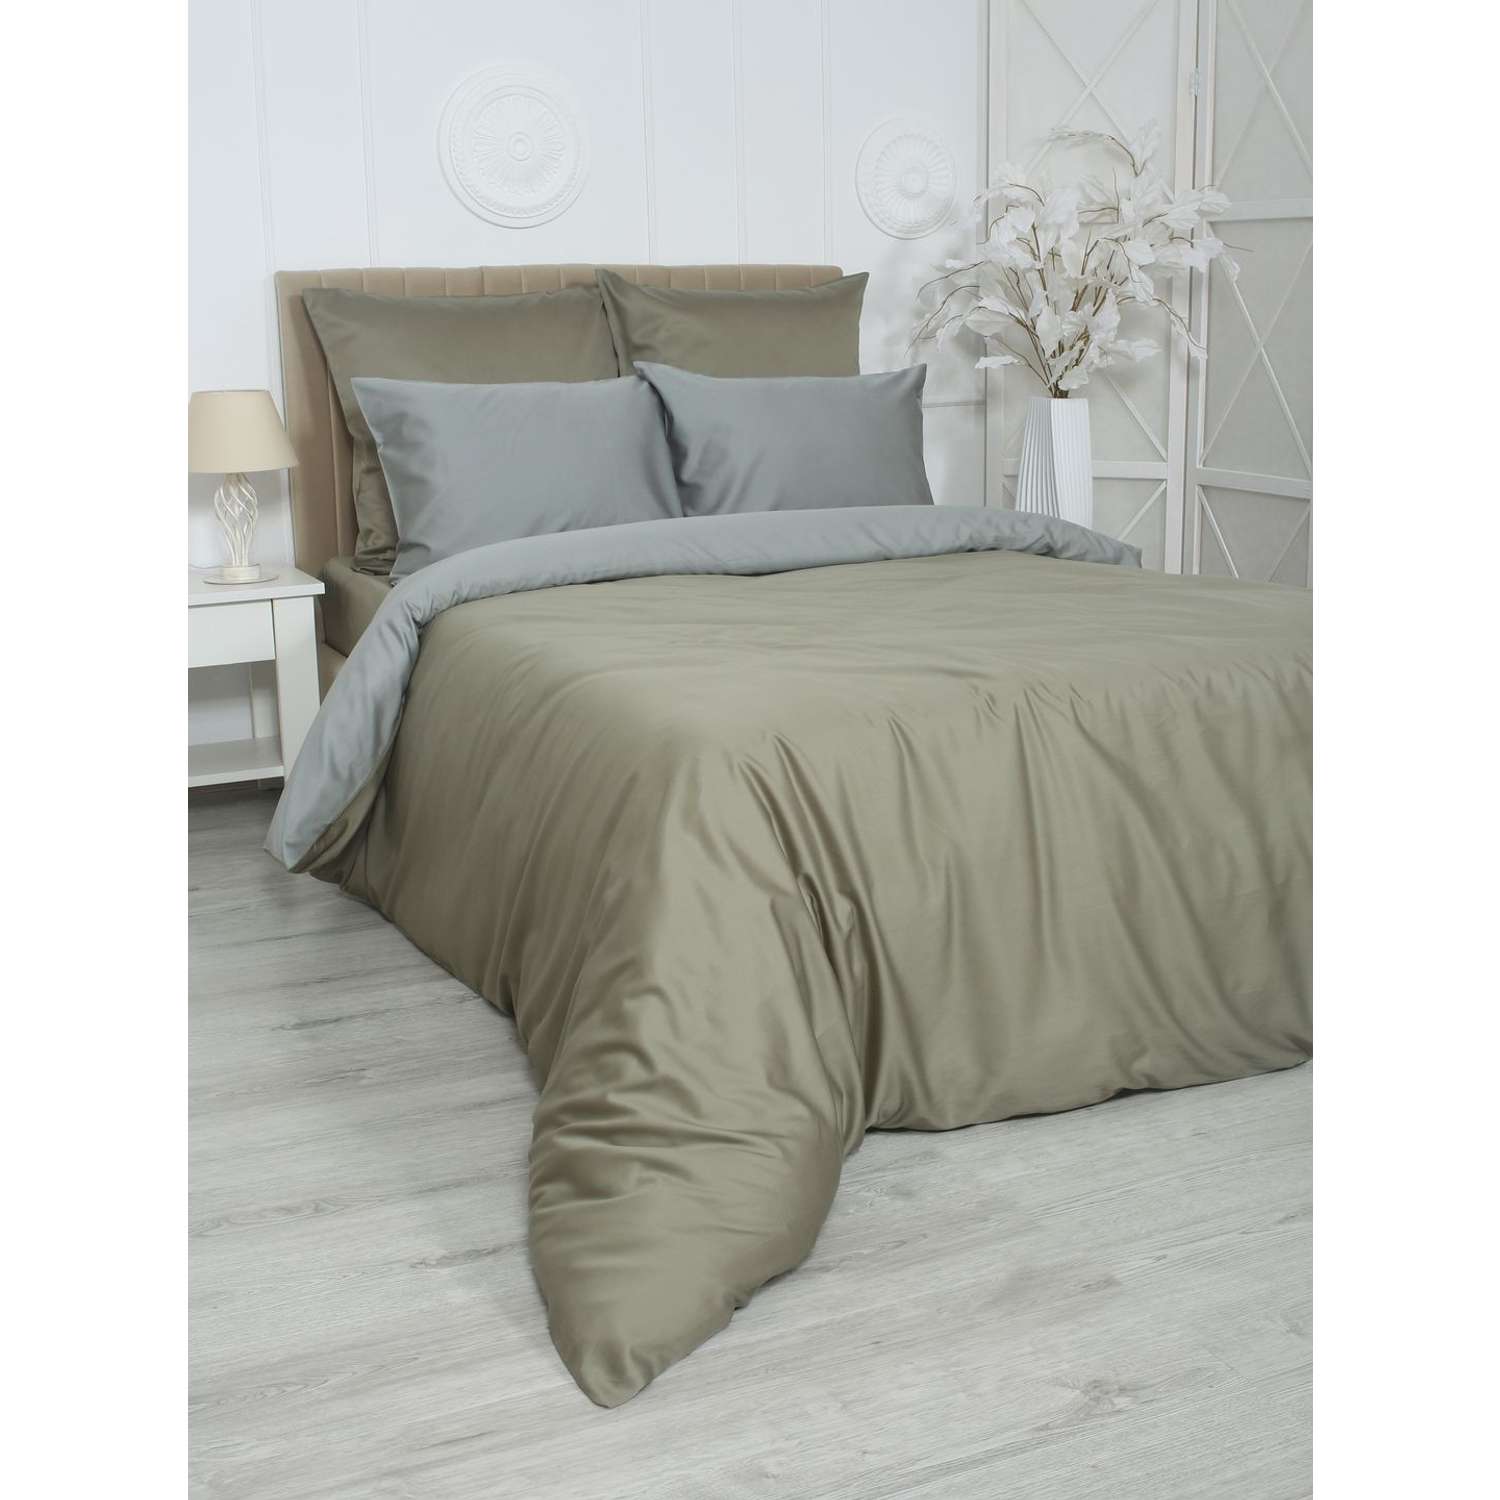 Комплект постельного белья Mona Liza 2 спальный ML Luxury sage тенсель лиоцелл шалфей/камень - фото 1